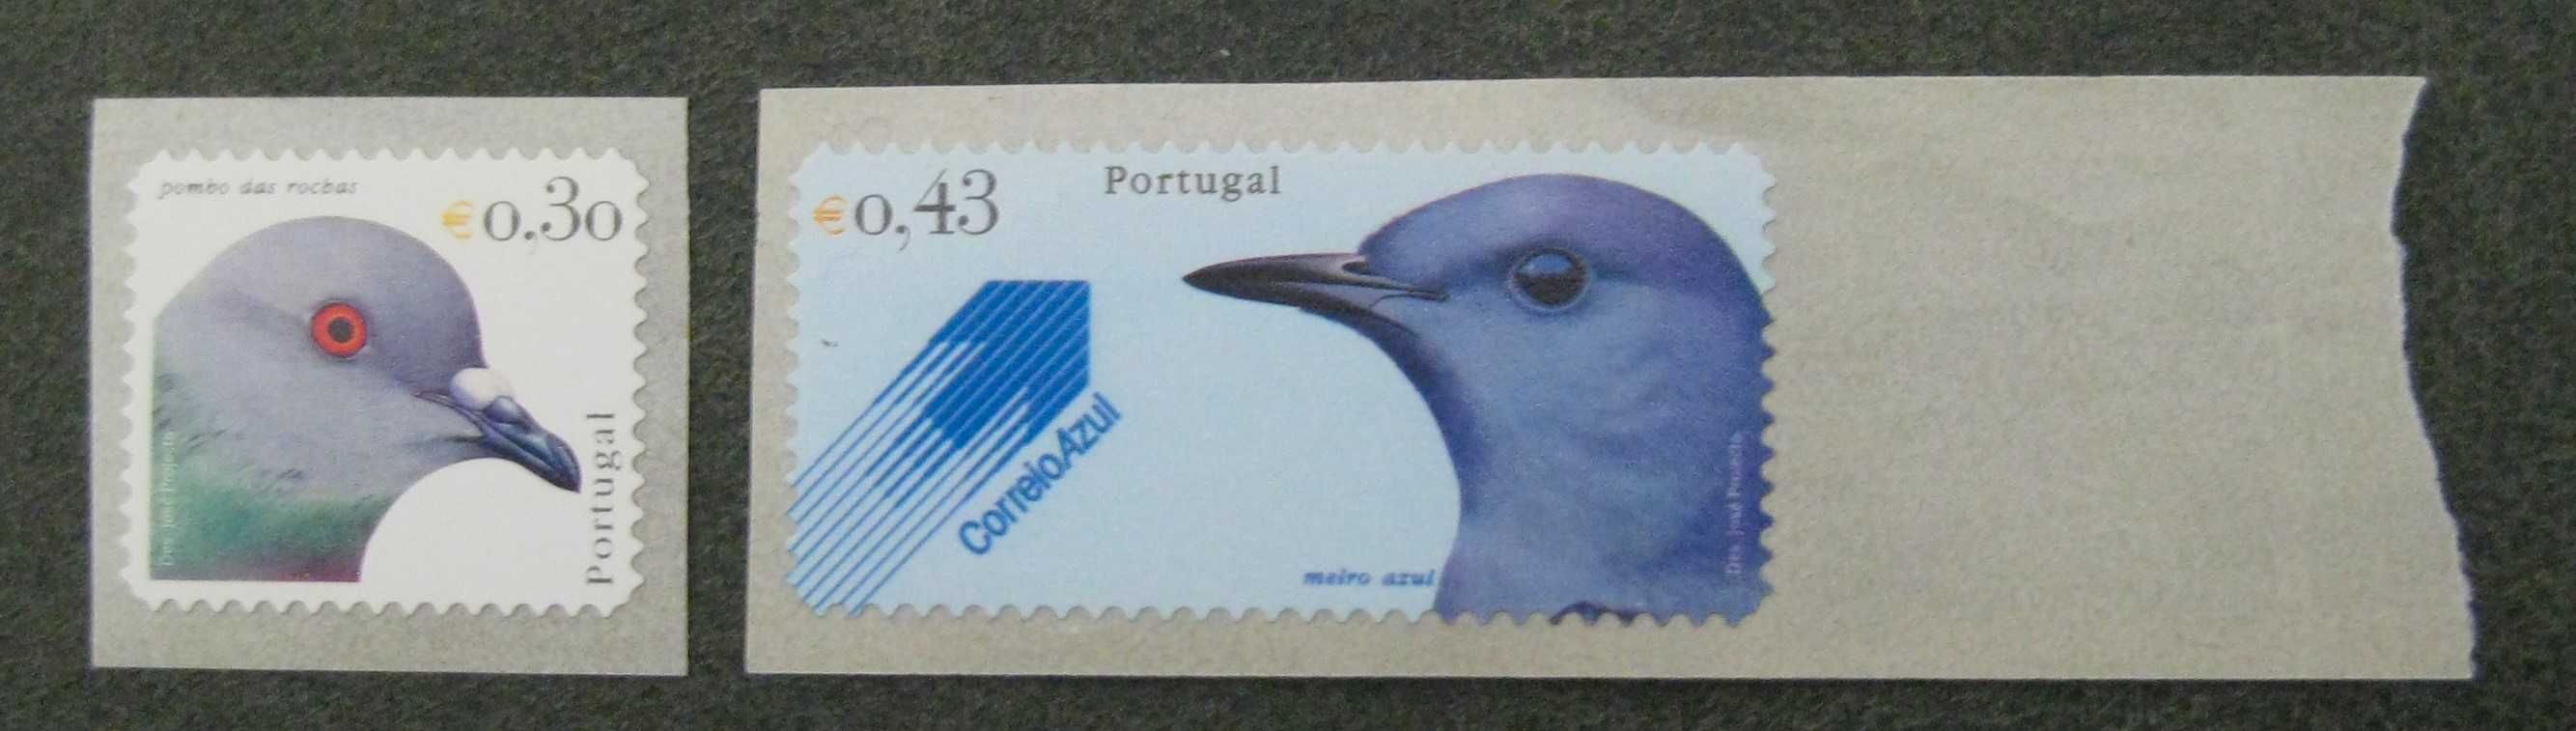 Séries Autoadesivas Caixa 2939/2940 - Aves Portugal (4º grupo)